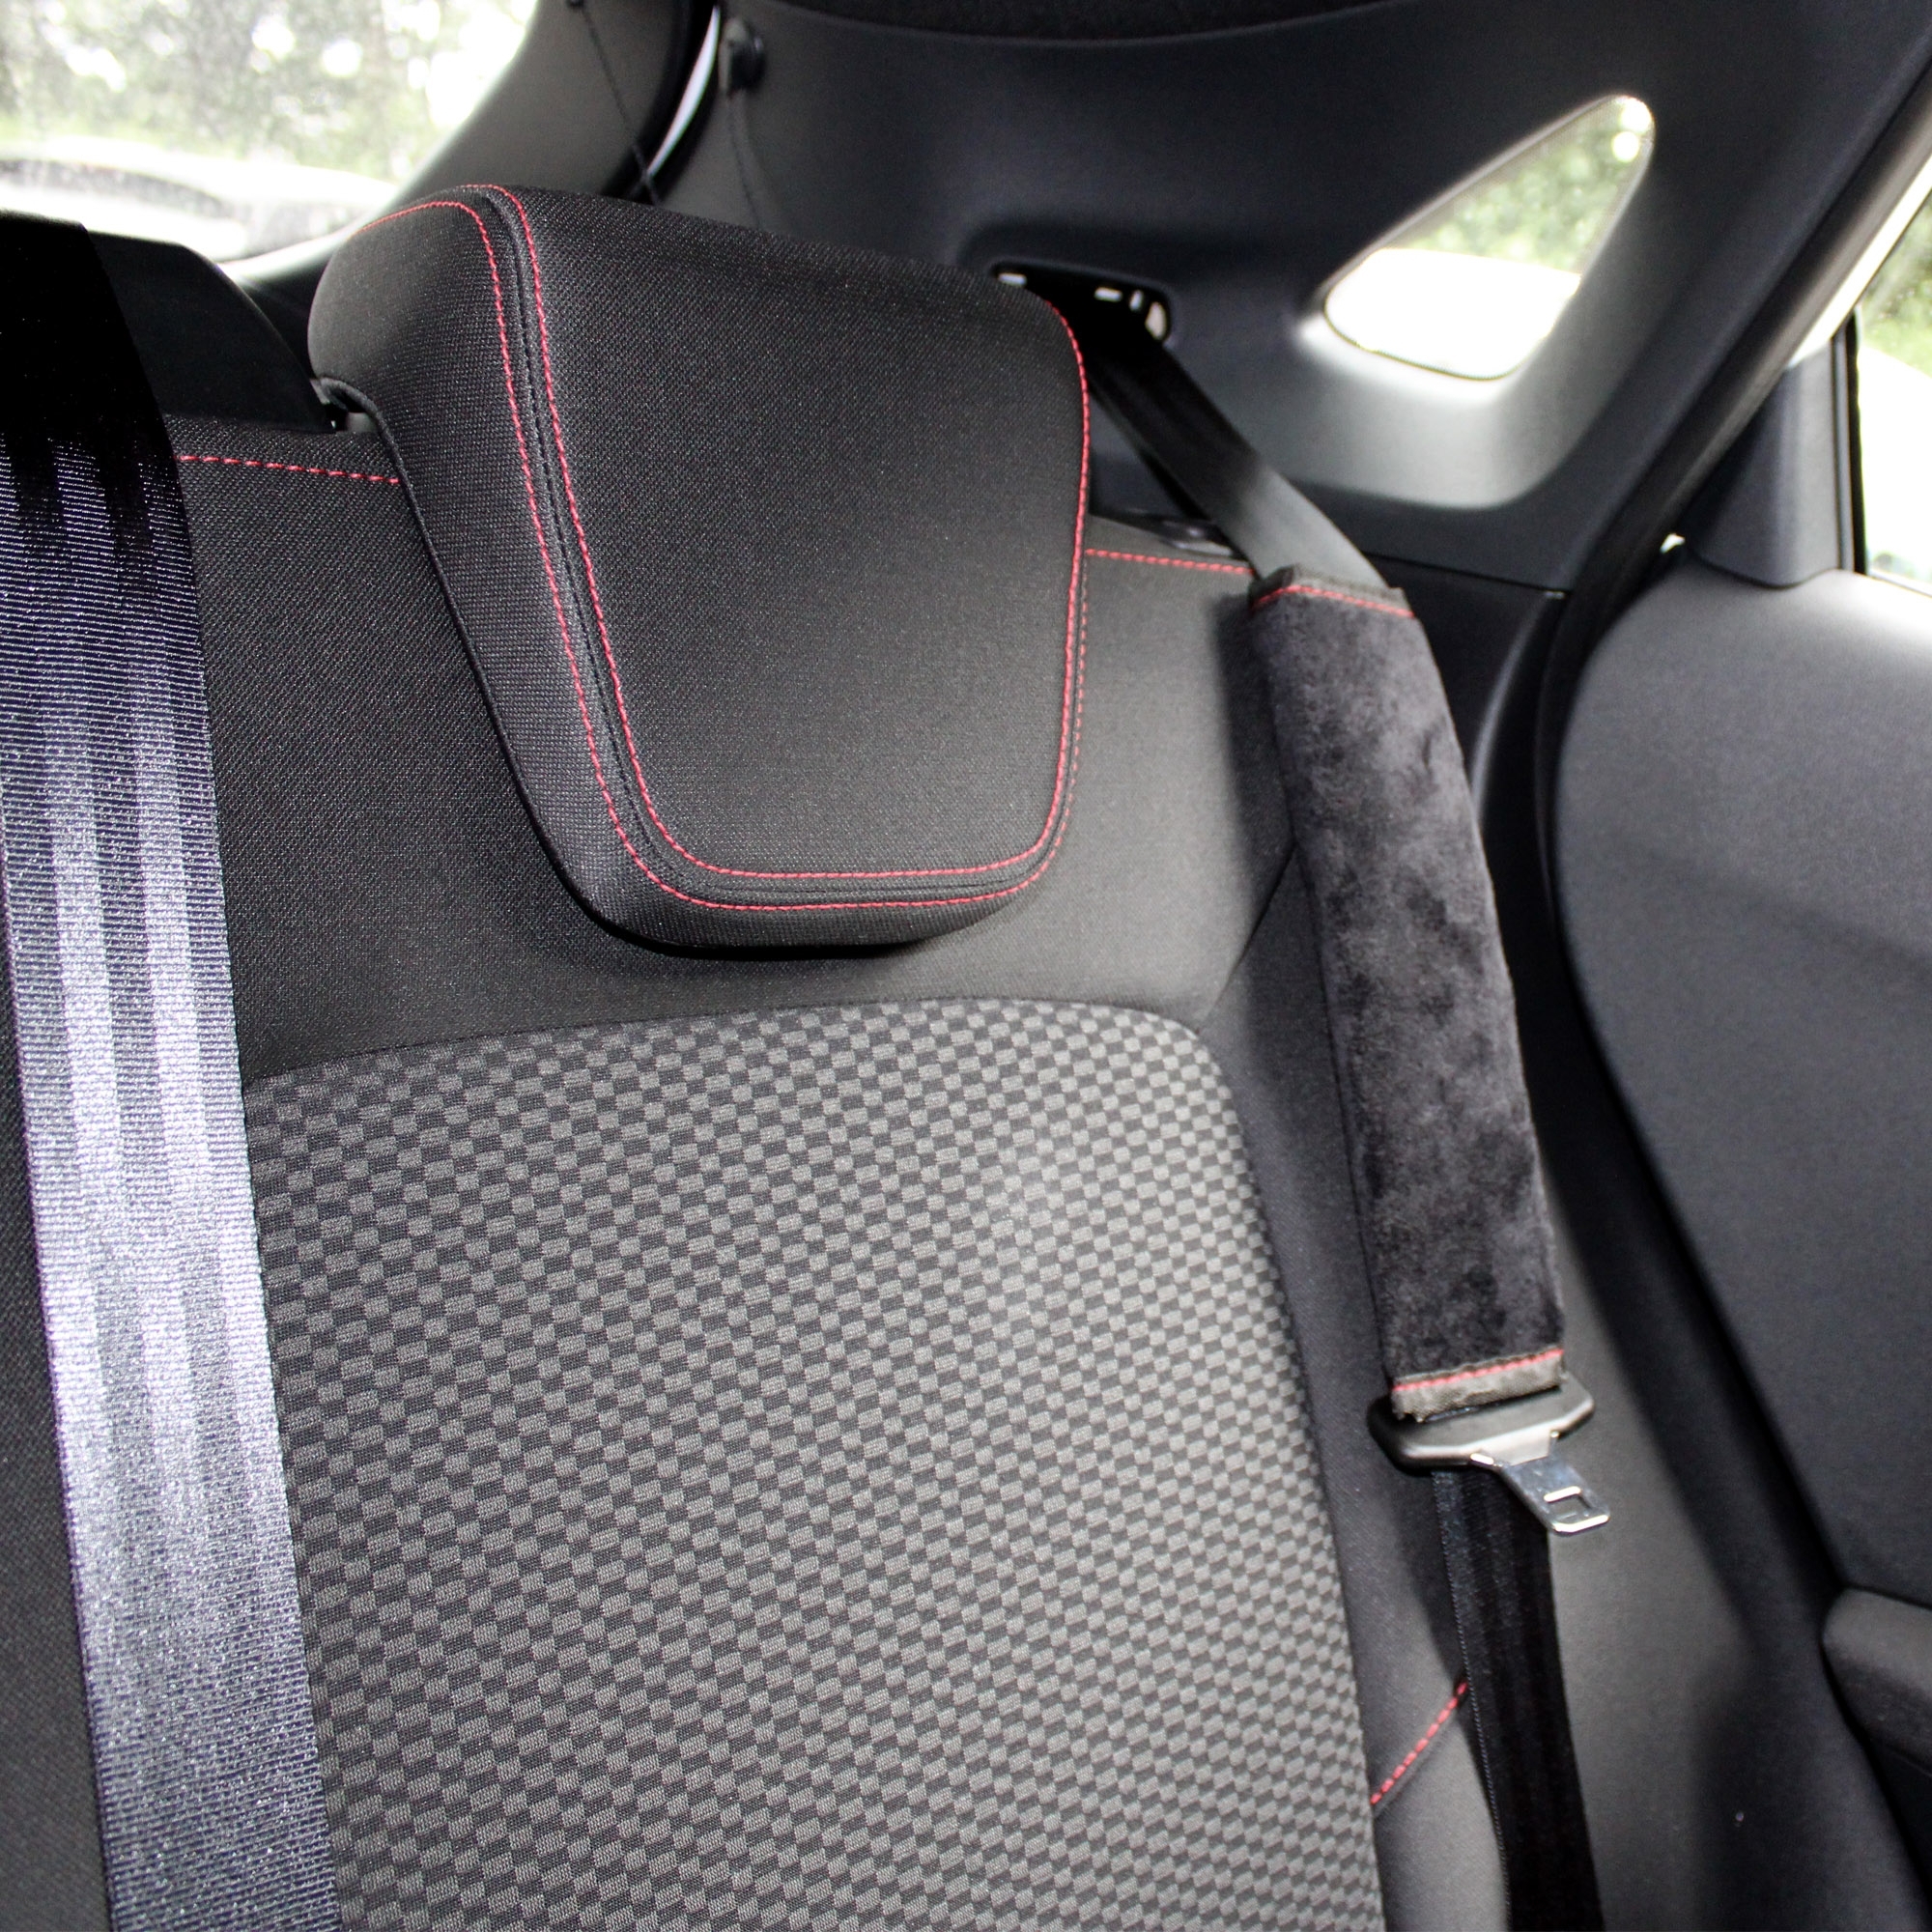 Auto Jdm Modifizierter Sicherheitsgurt Schulterpolster Innenraum